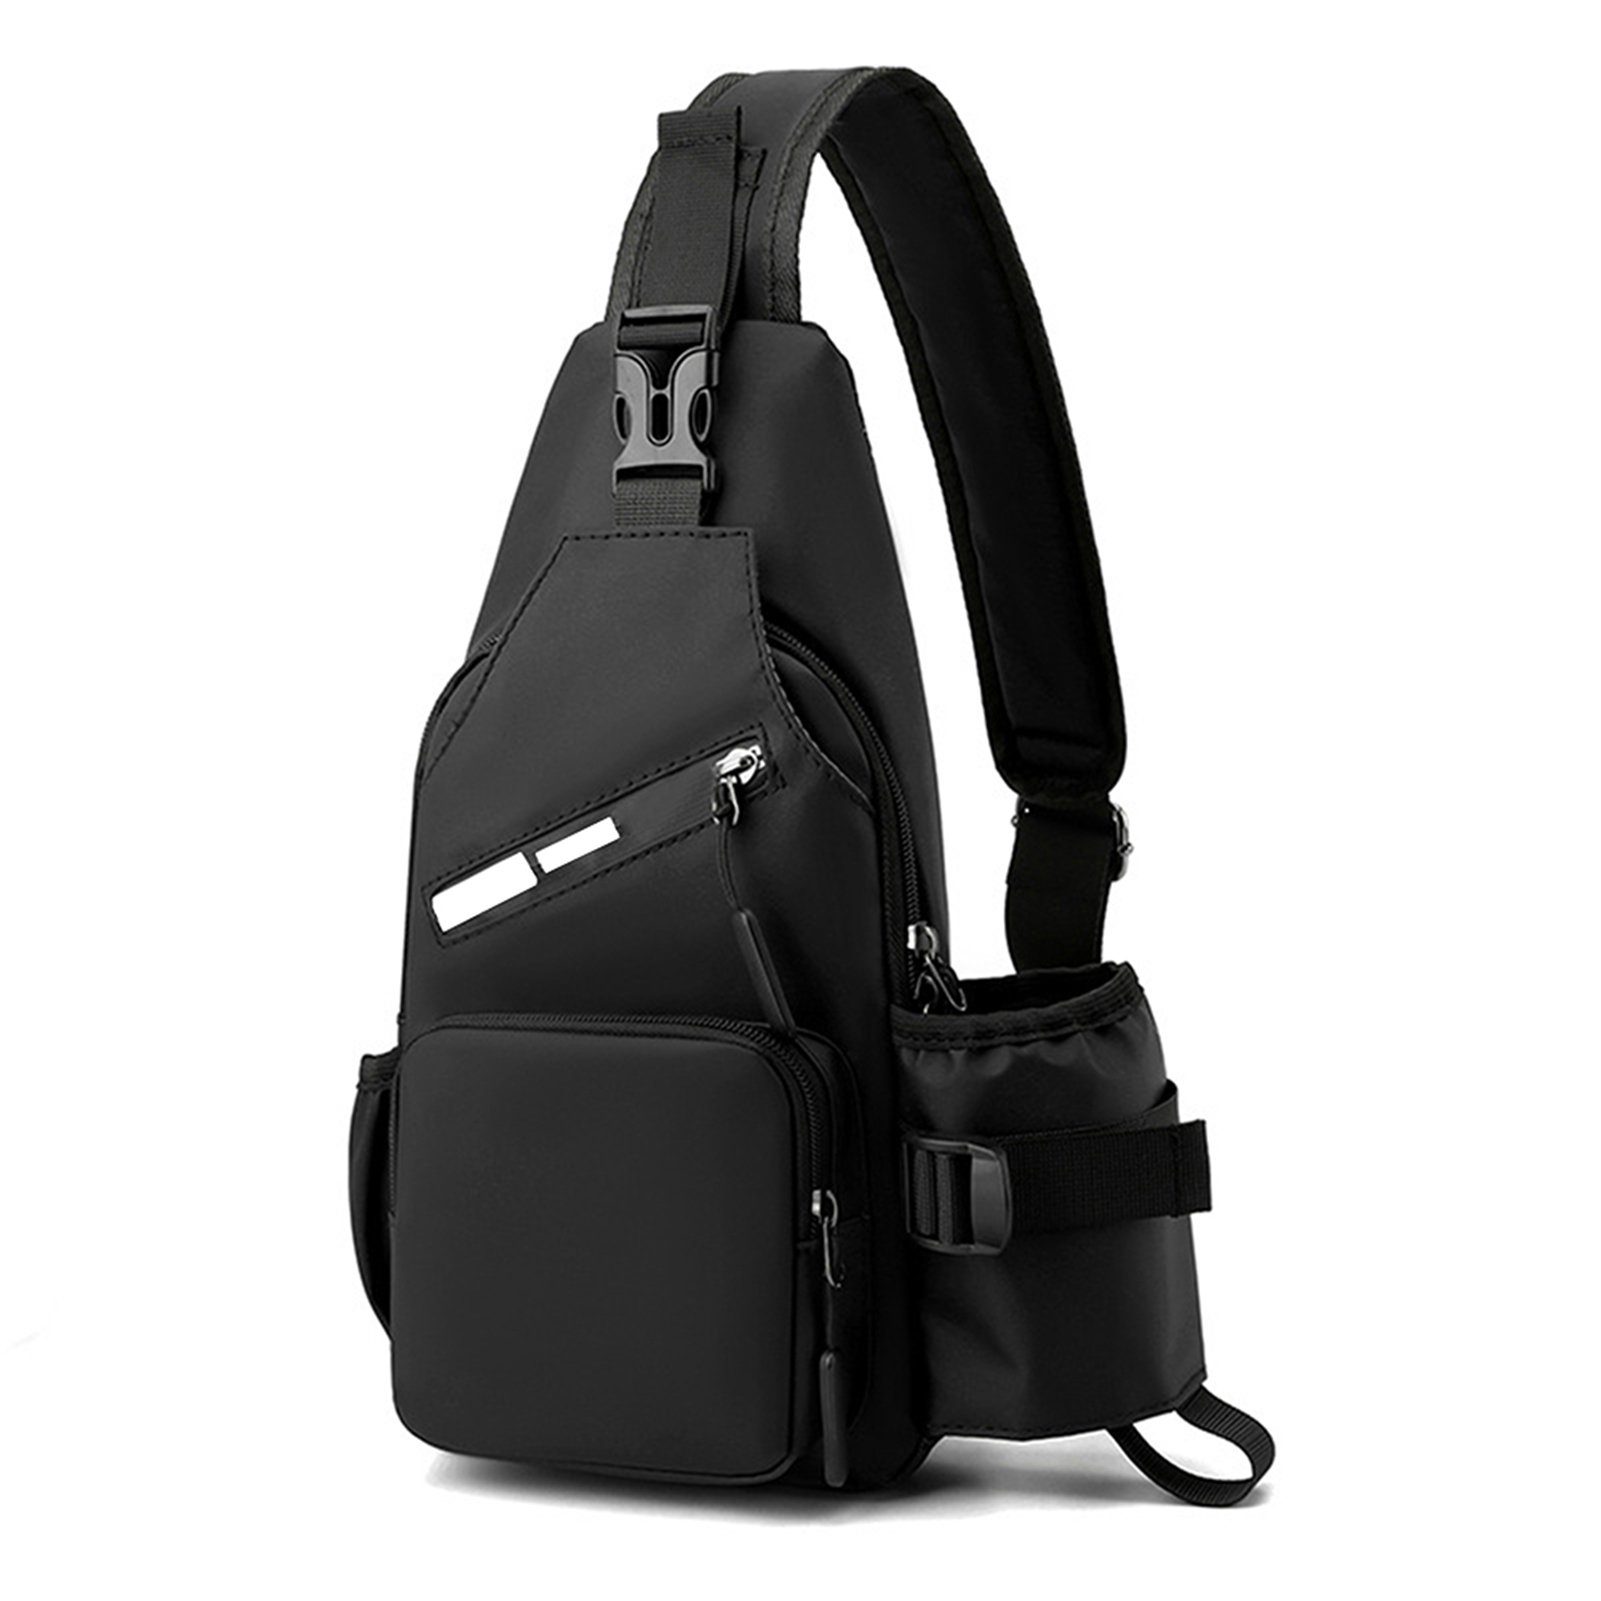 Blusmart Sporttasche Herren-Brusttasche Mit Wasserflaschentasche, Multifunktionaler black